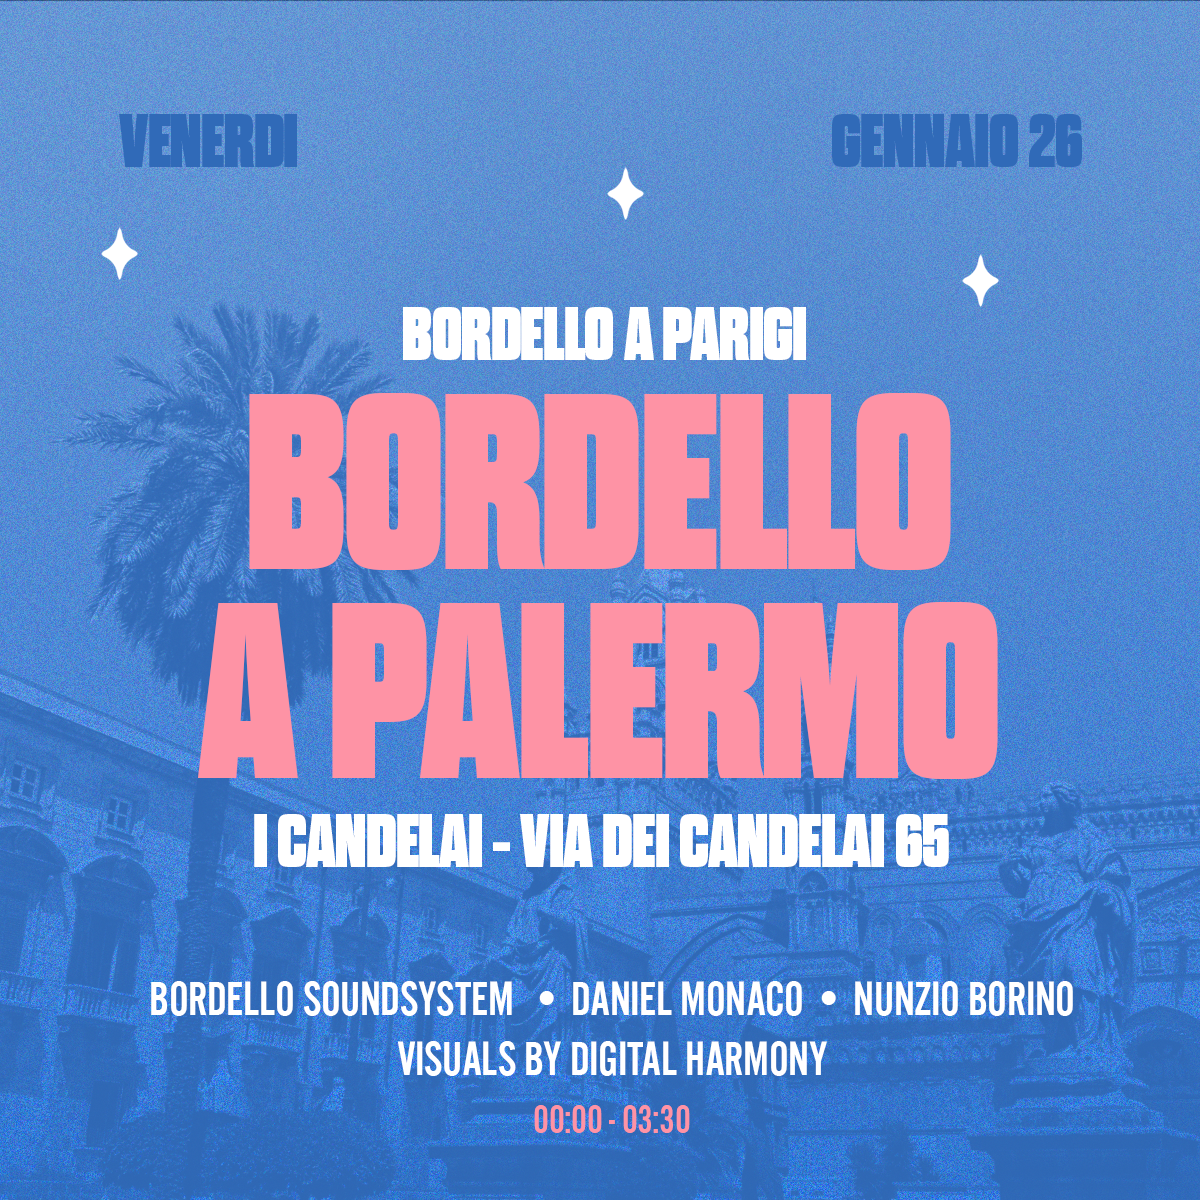 BORDELLO A PALERMO - フライヤー表